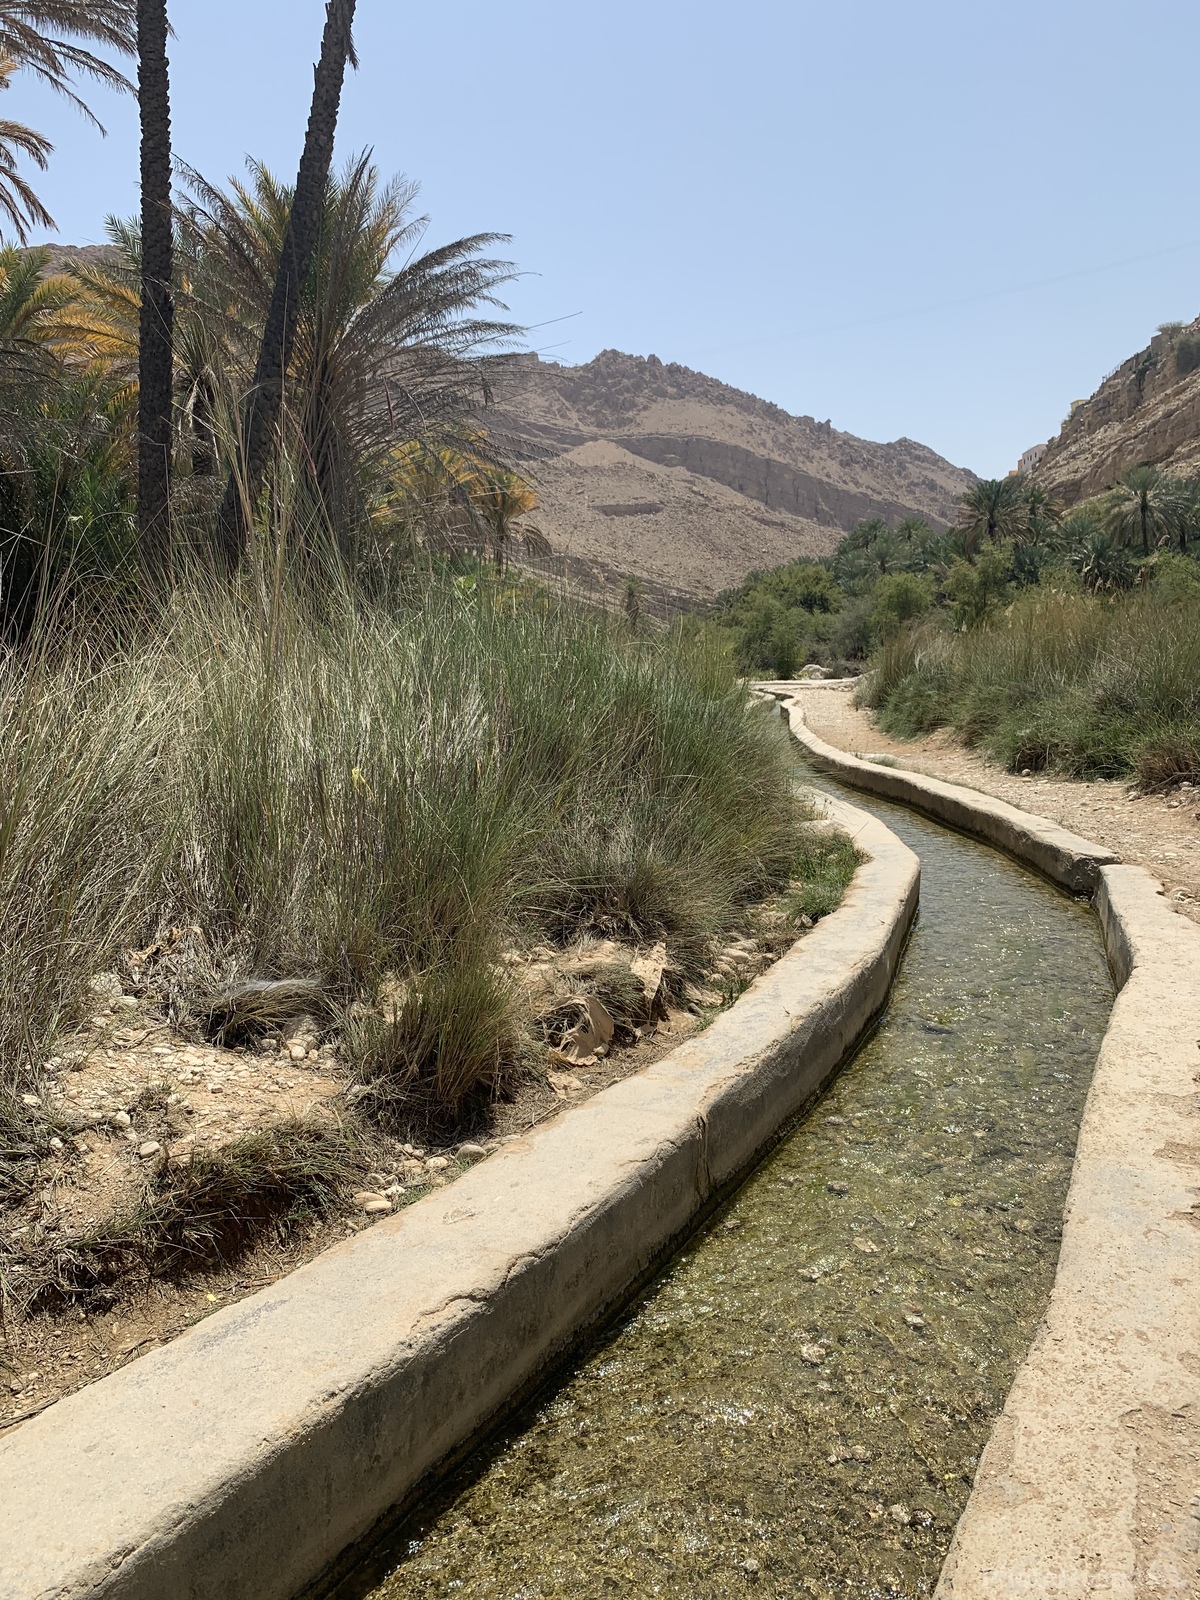 Image of Wadi Bani Khalid by Alexandra Sharrock